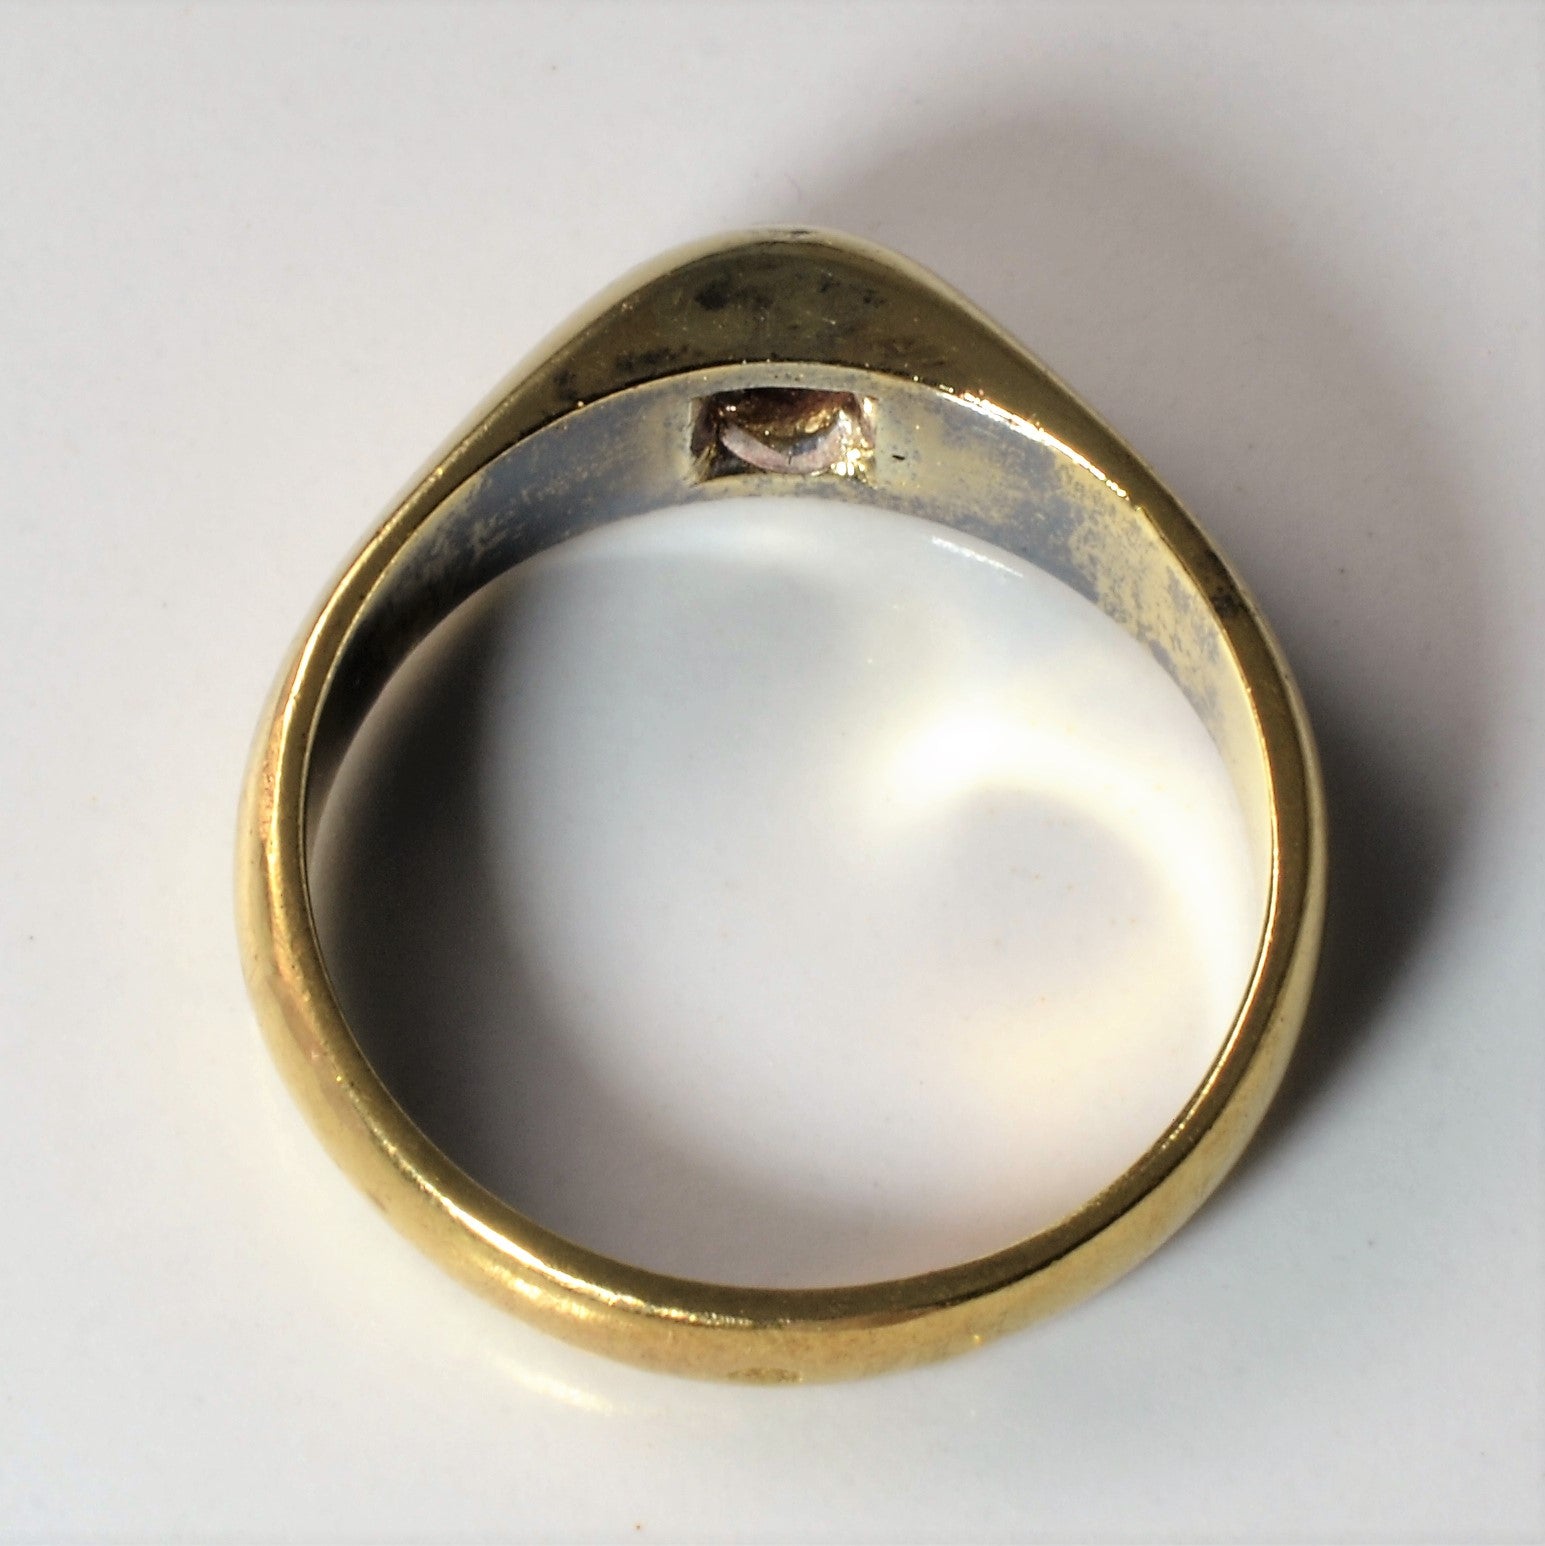 Edwardian Era Old European Diamond Ring | 0.46ct | SZ 9.75 |